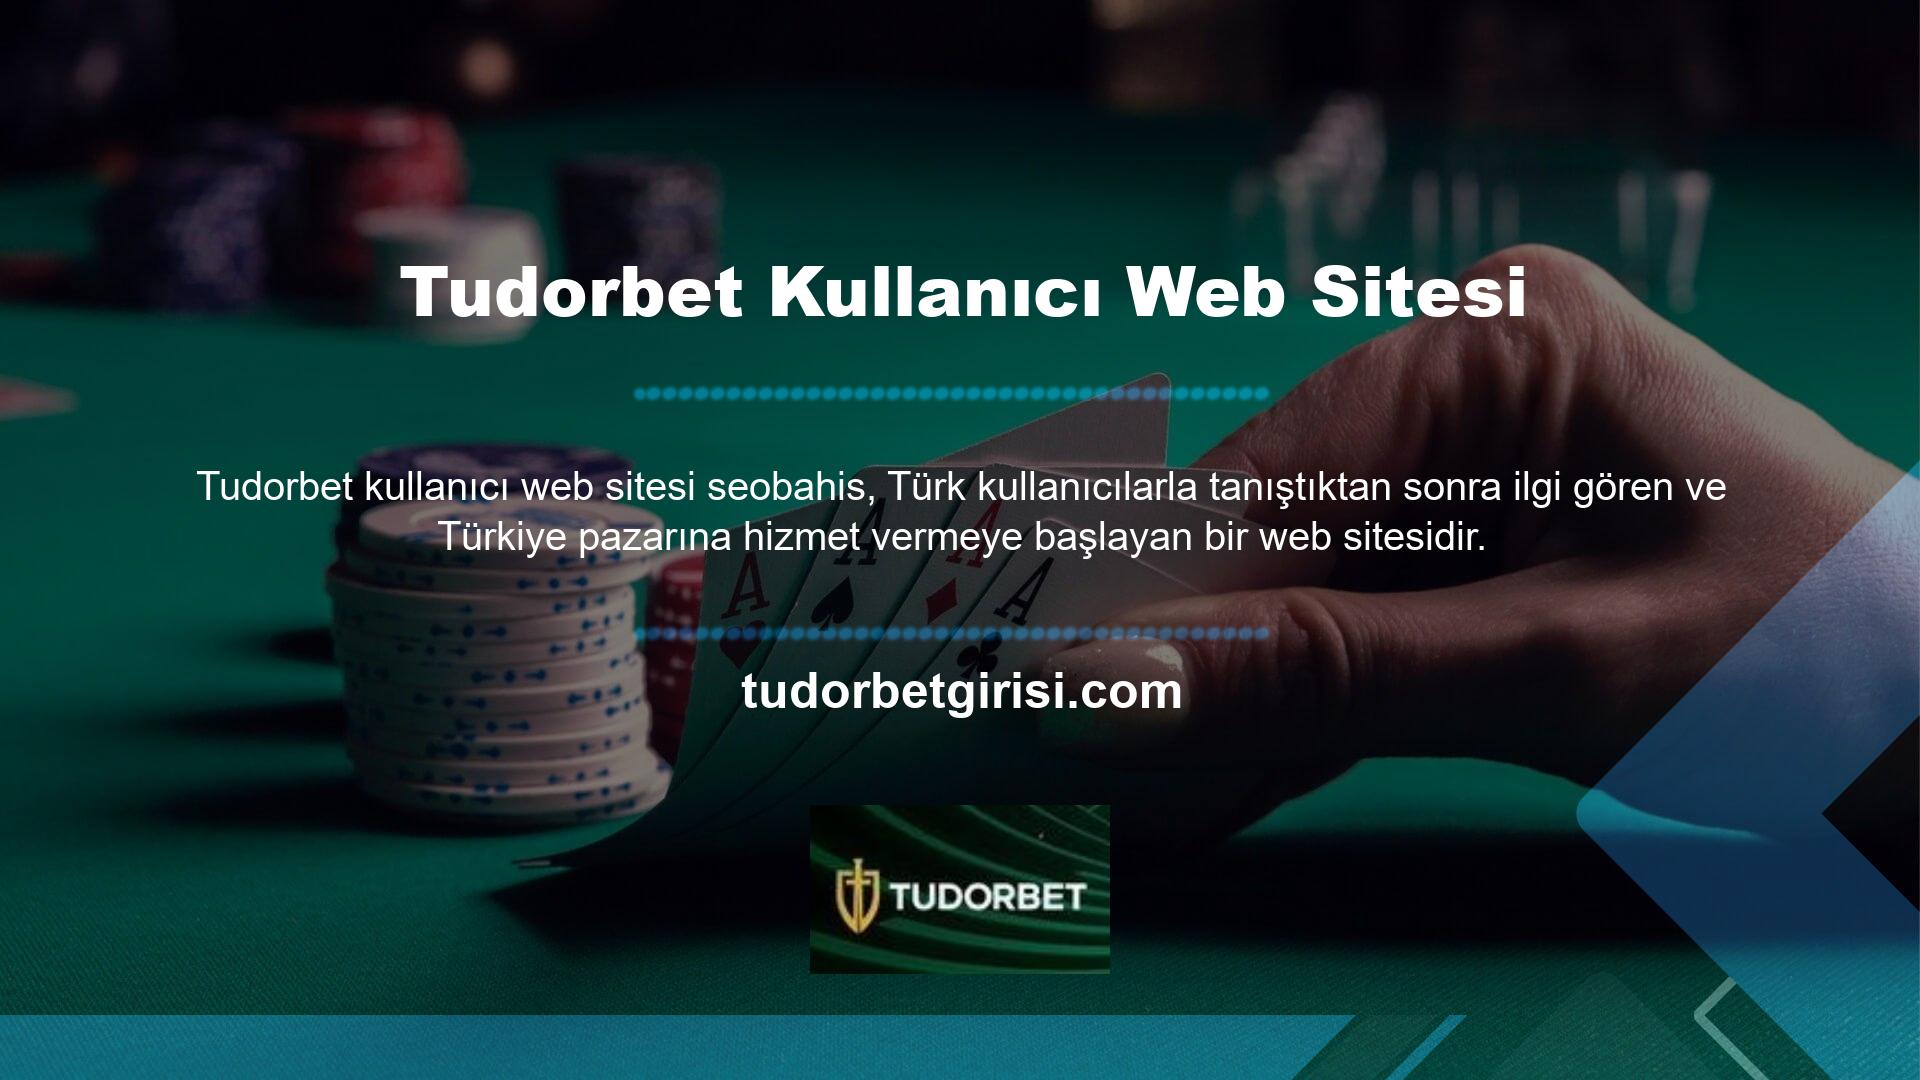 Yönetilen bir casino web sitesi, casinolar söz konusu olduğunda dikkatli, dengeli, şeffaf ve coşkuyla oynama lisansına sahip, sağlam, güvenilir bir web sitesidir